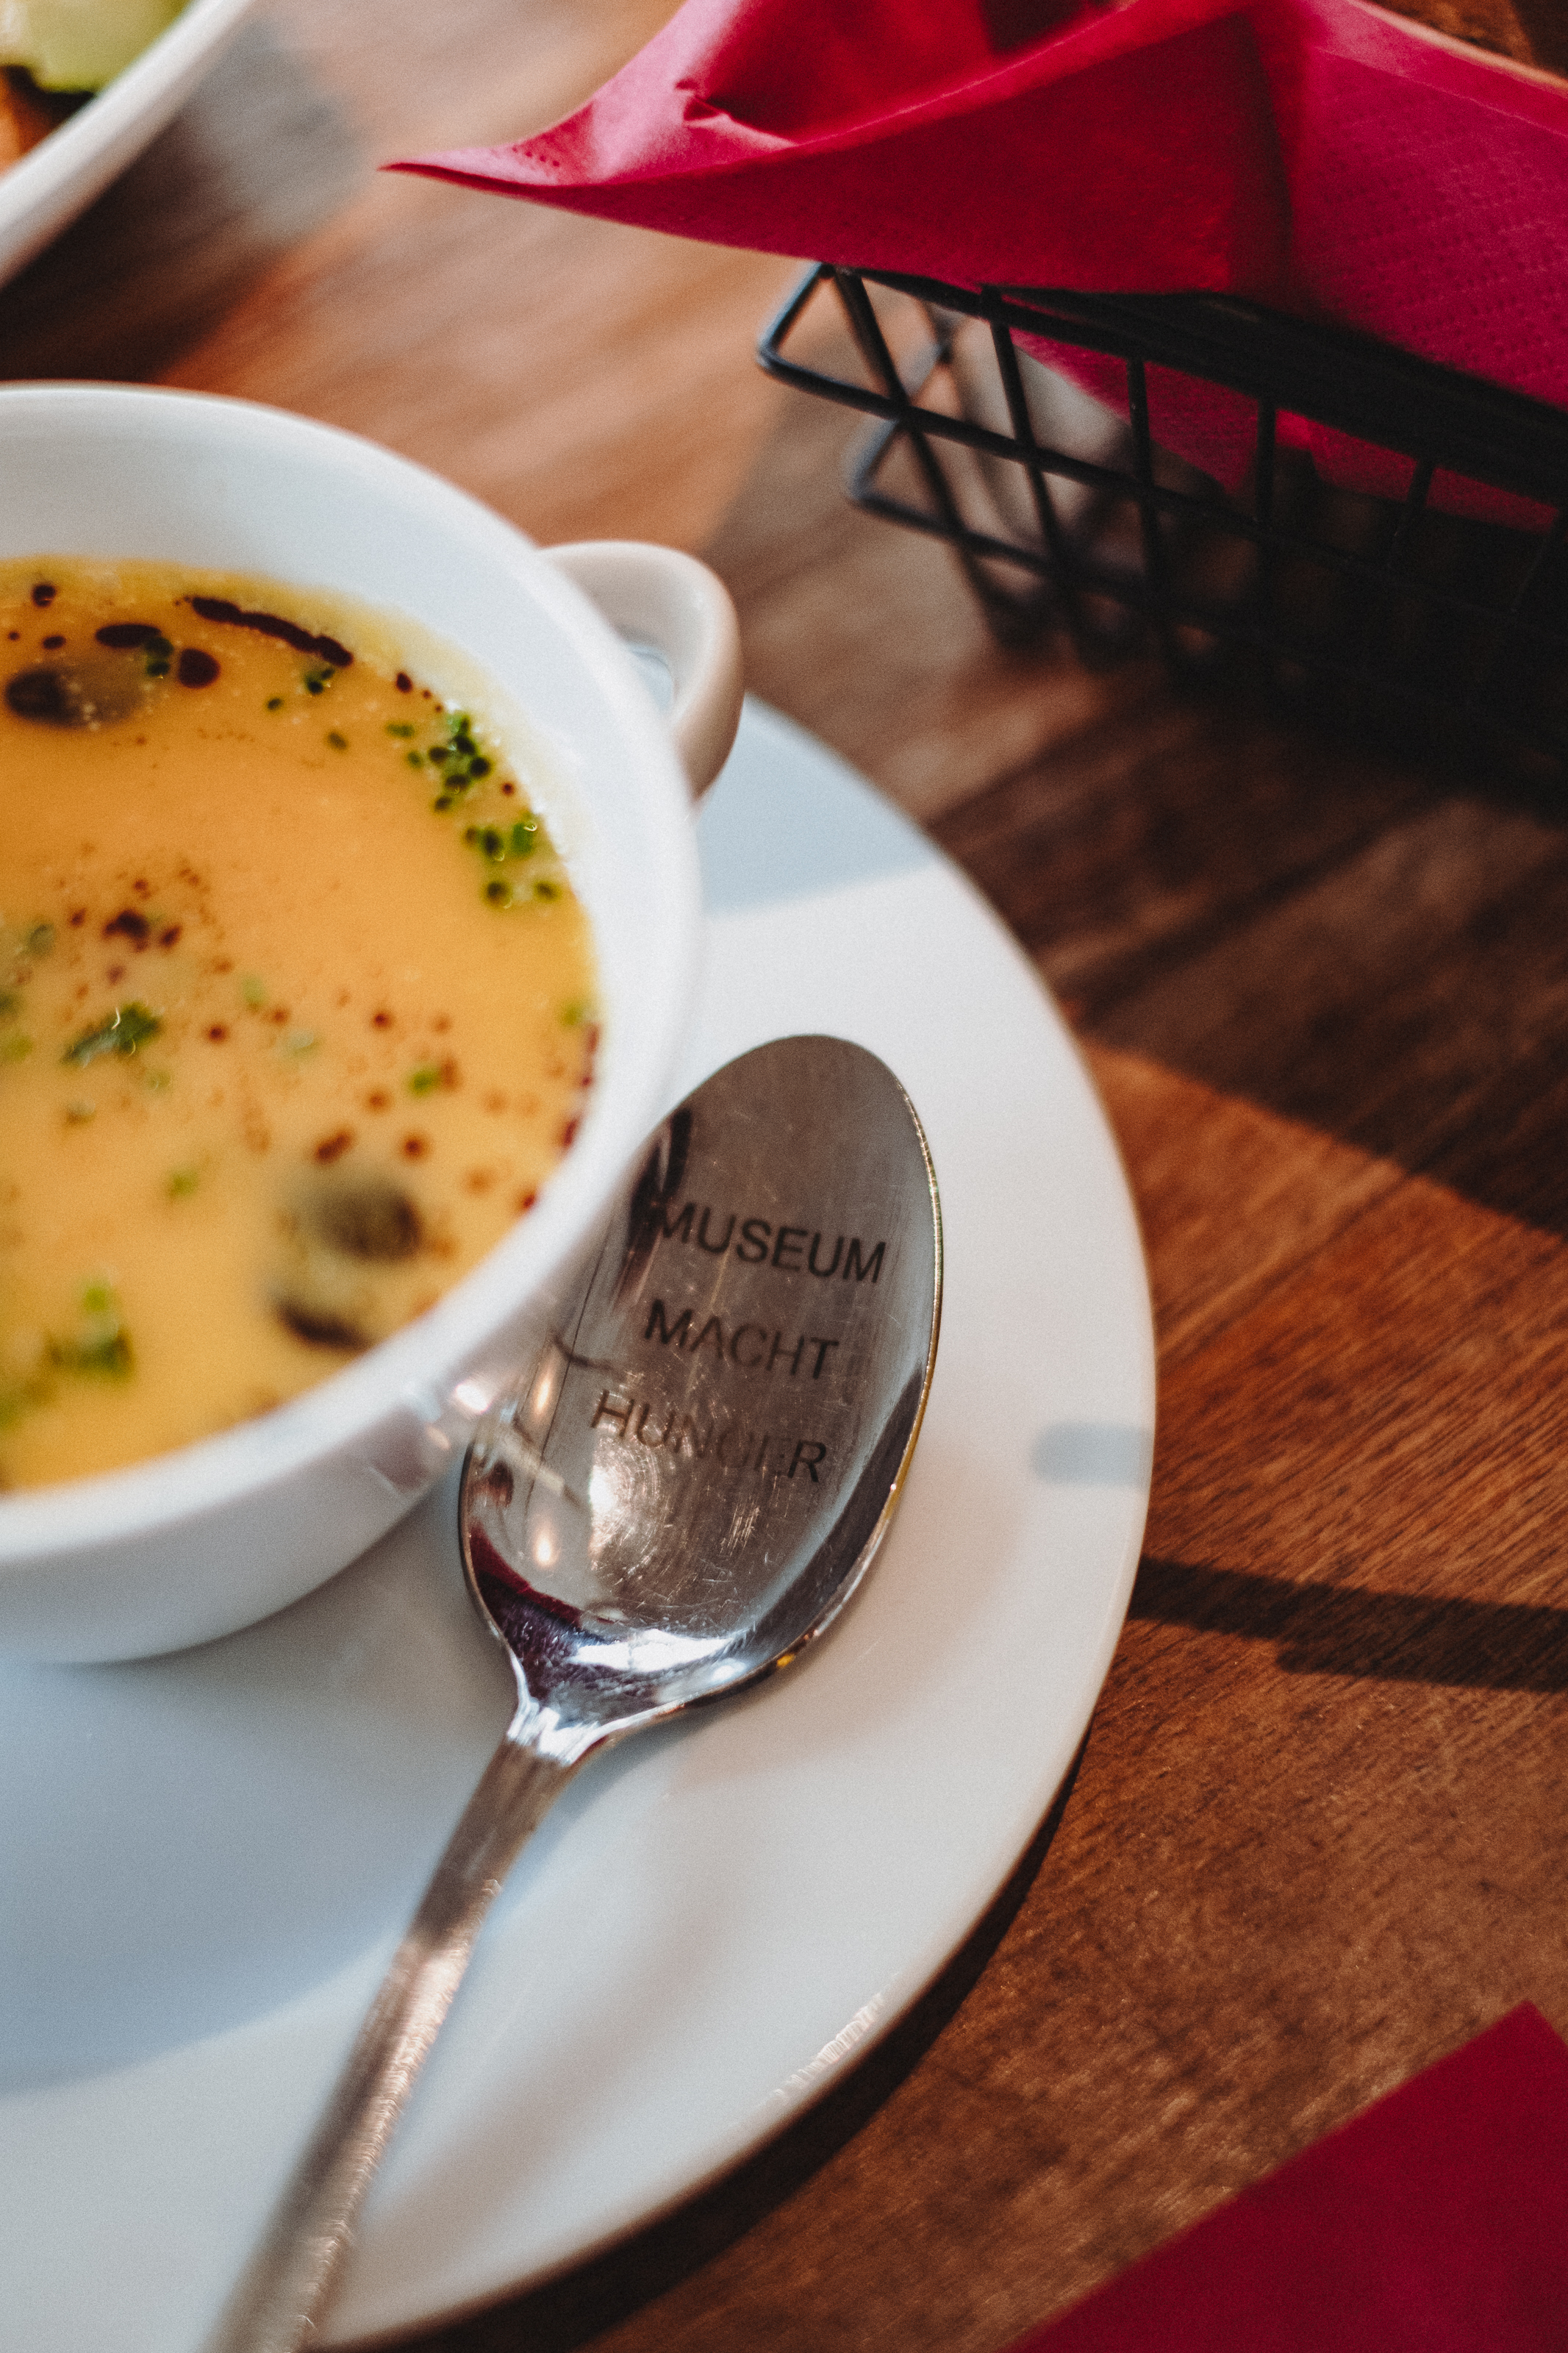 Sur une table se trouve une assiette avec de la soupe. A côté d'elle se trouve une cuillère sur laquelle est écrit "Le musée donne faim". - vue agrandie